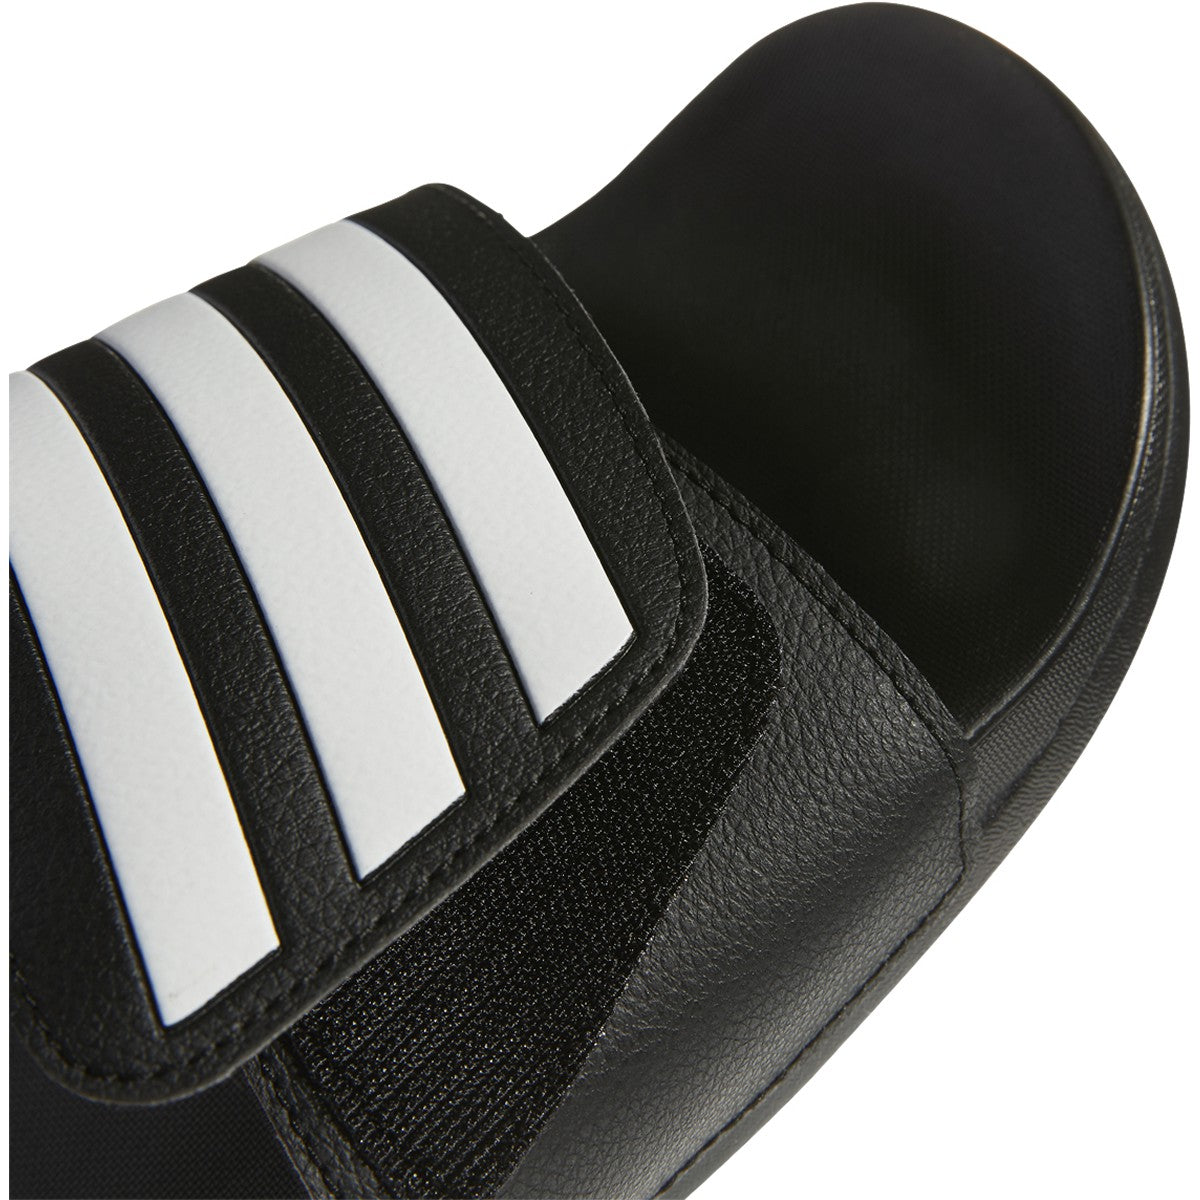 Adidas Adilette Comfort Adjustable Slide